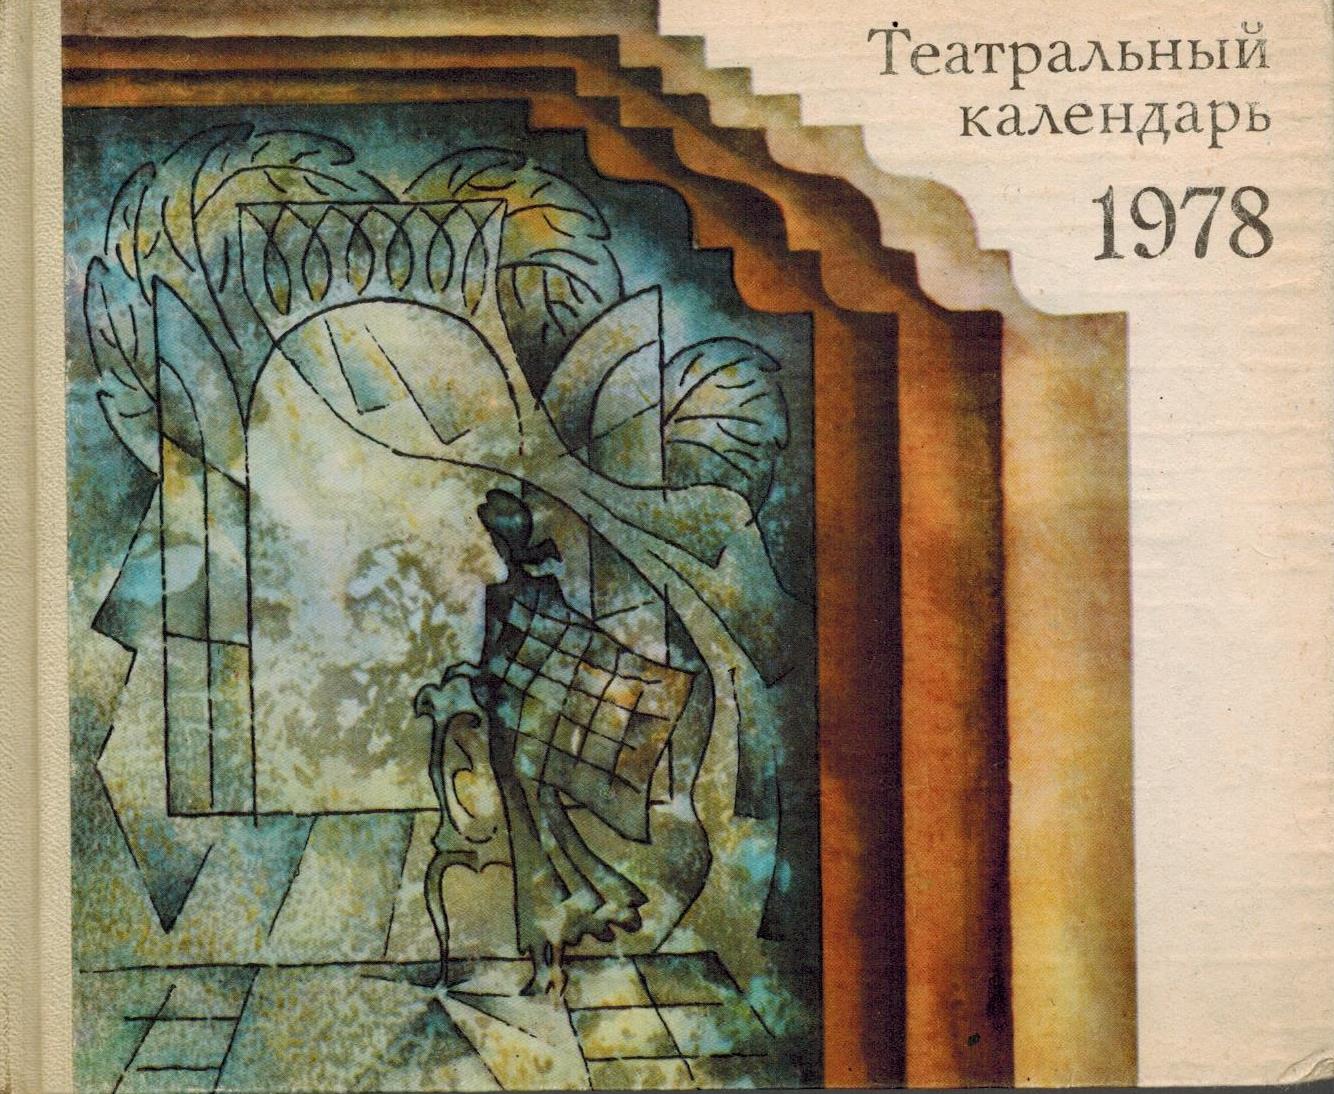 И.И. Елизарова, В.М. Миронова Театральный календарь, 1978